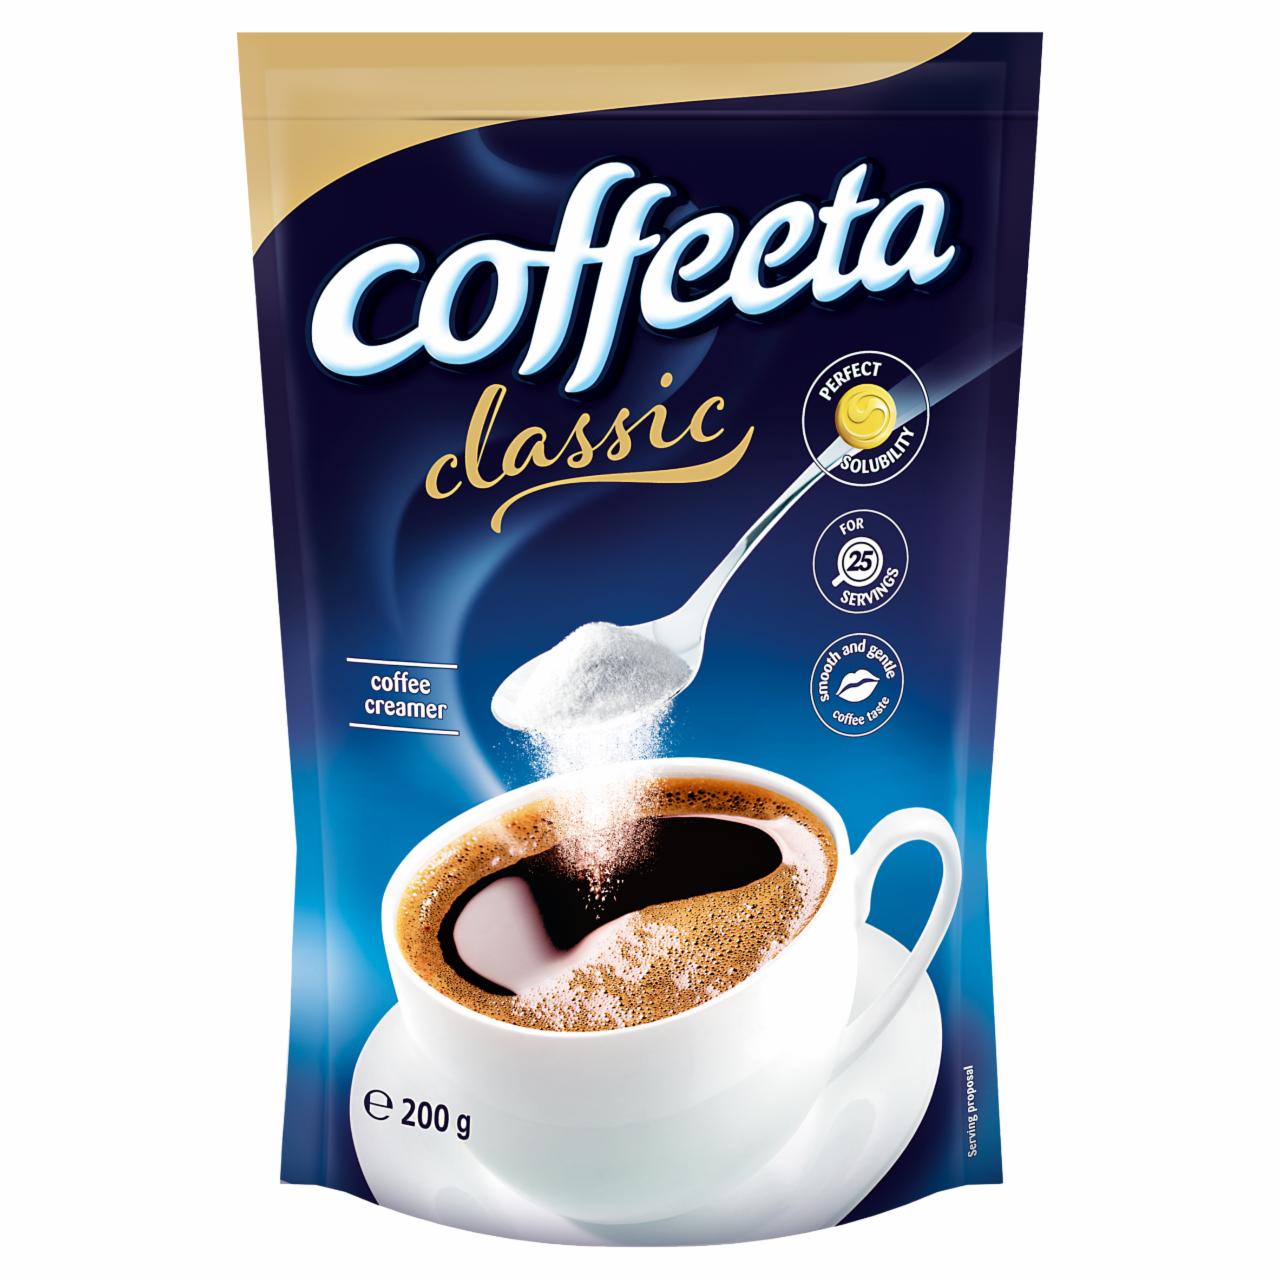 Képek - Coffeeta Classic gyorsan oldódó kávékrémpor 200 g